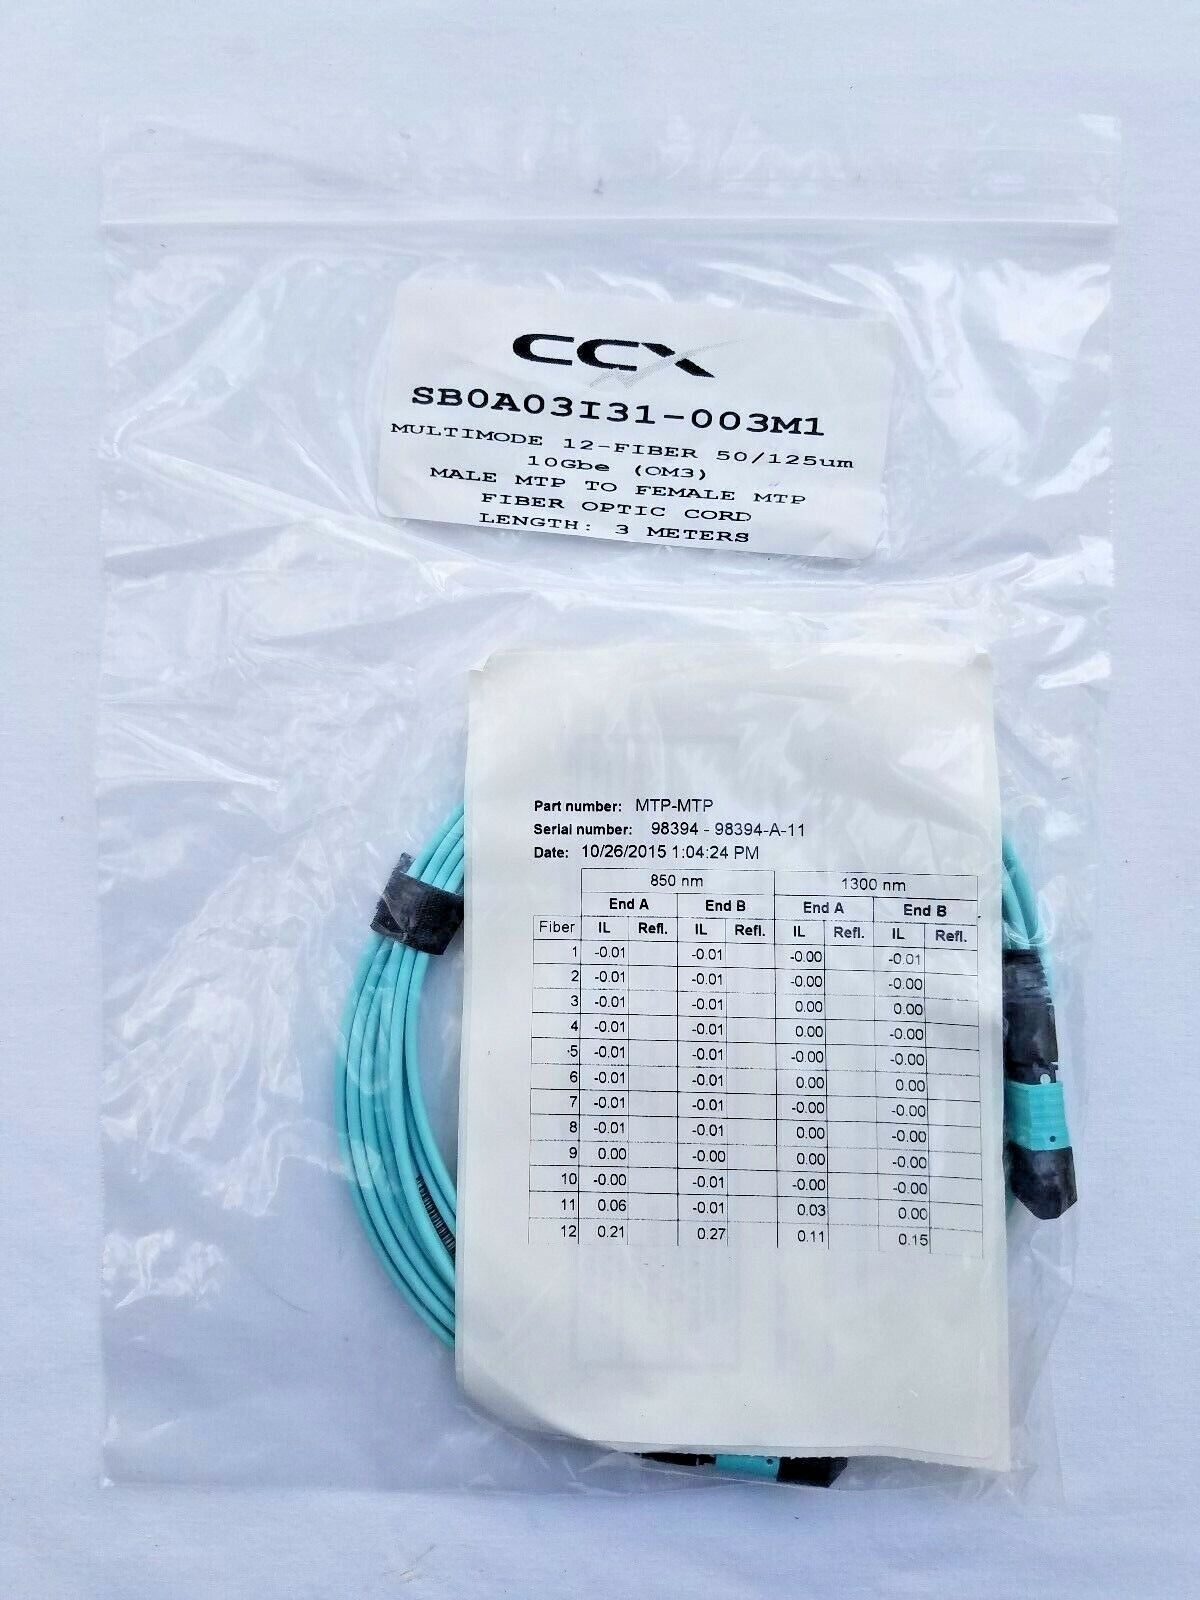 Male MTP to Female MTP CCX 12-Fiber MM 50/125um 10-GIG (OM3) - 3 Meters